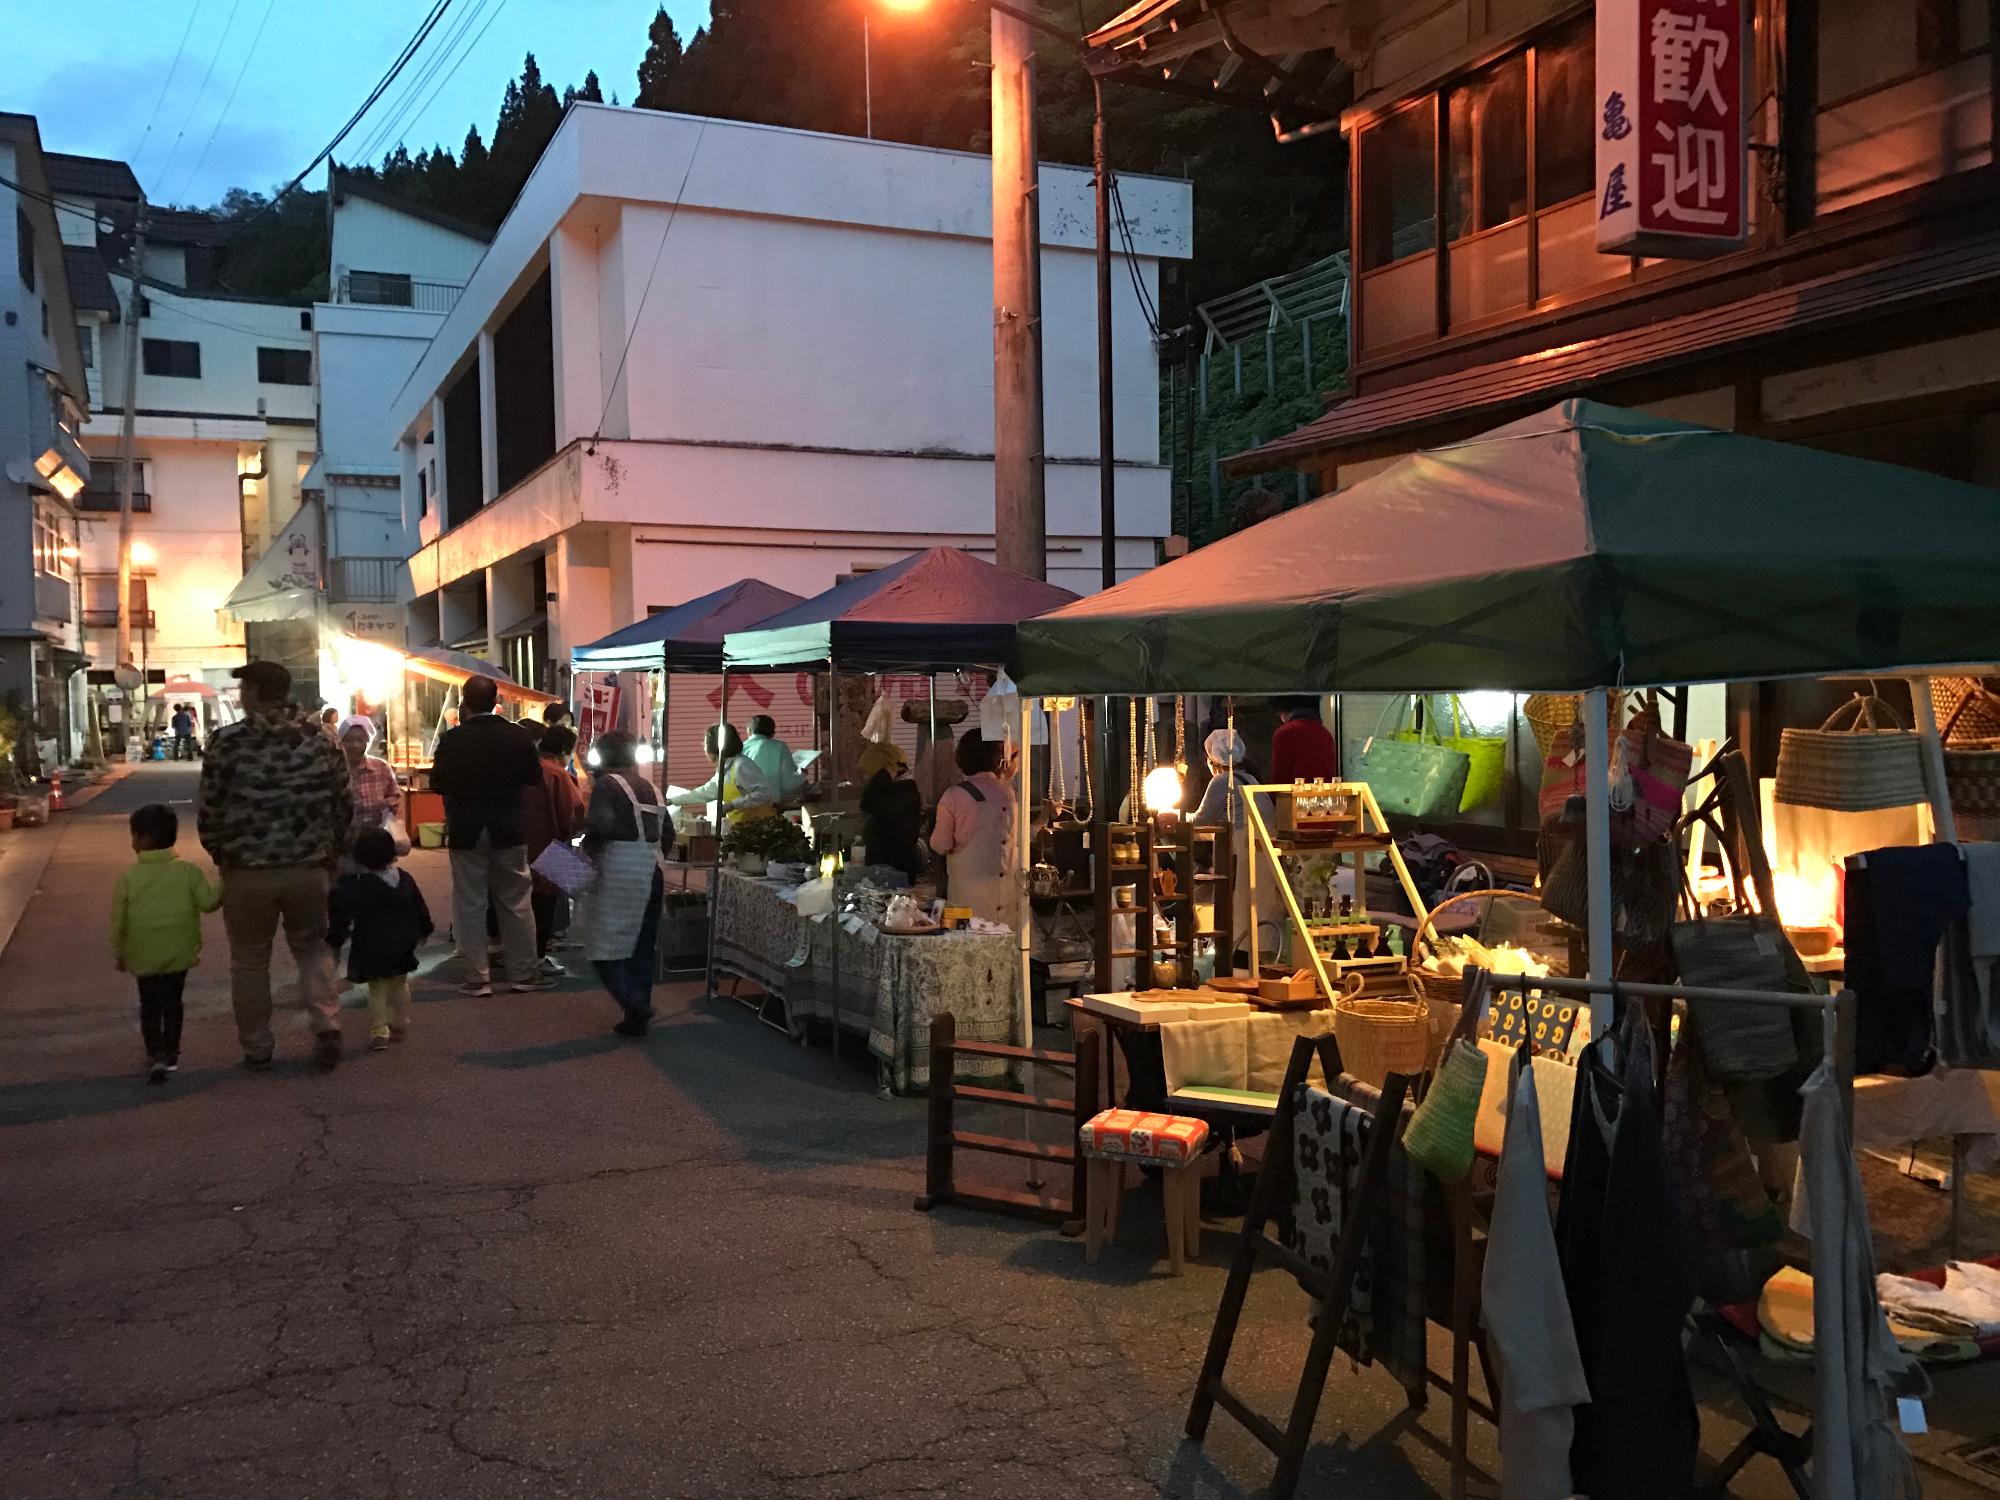 夕暮れの温泉街で旅館の軒先に出店が立ち並び、買い物をする人々の画像